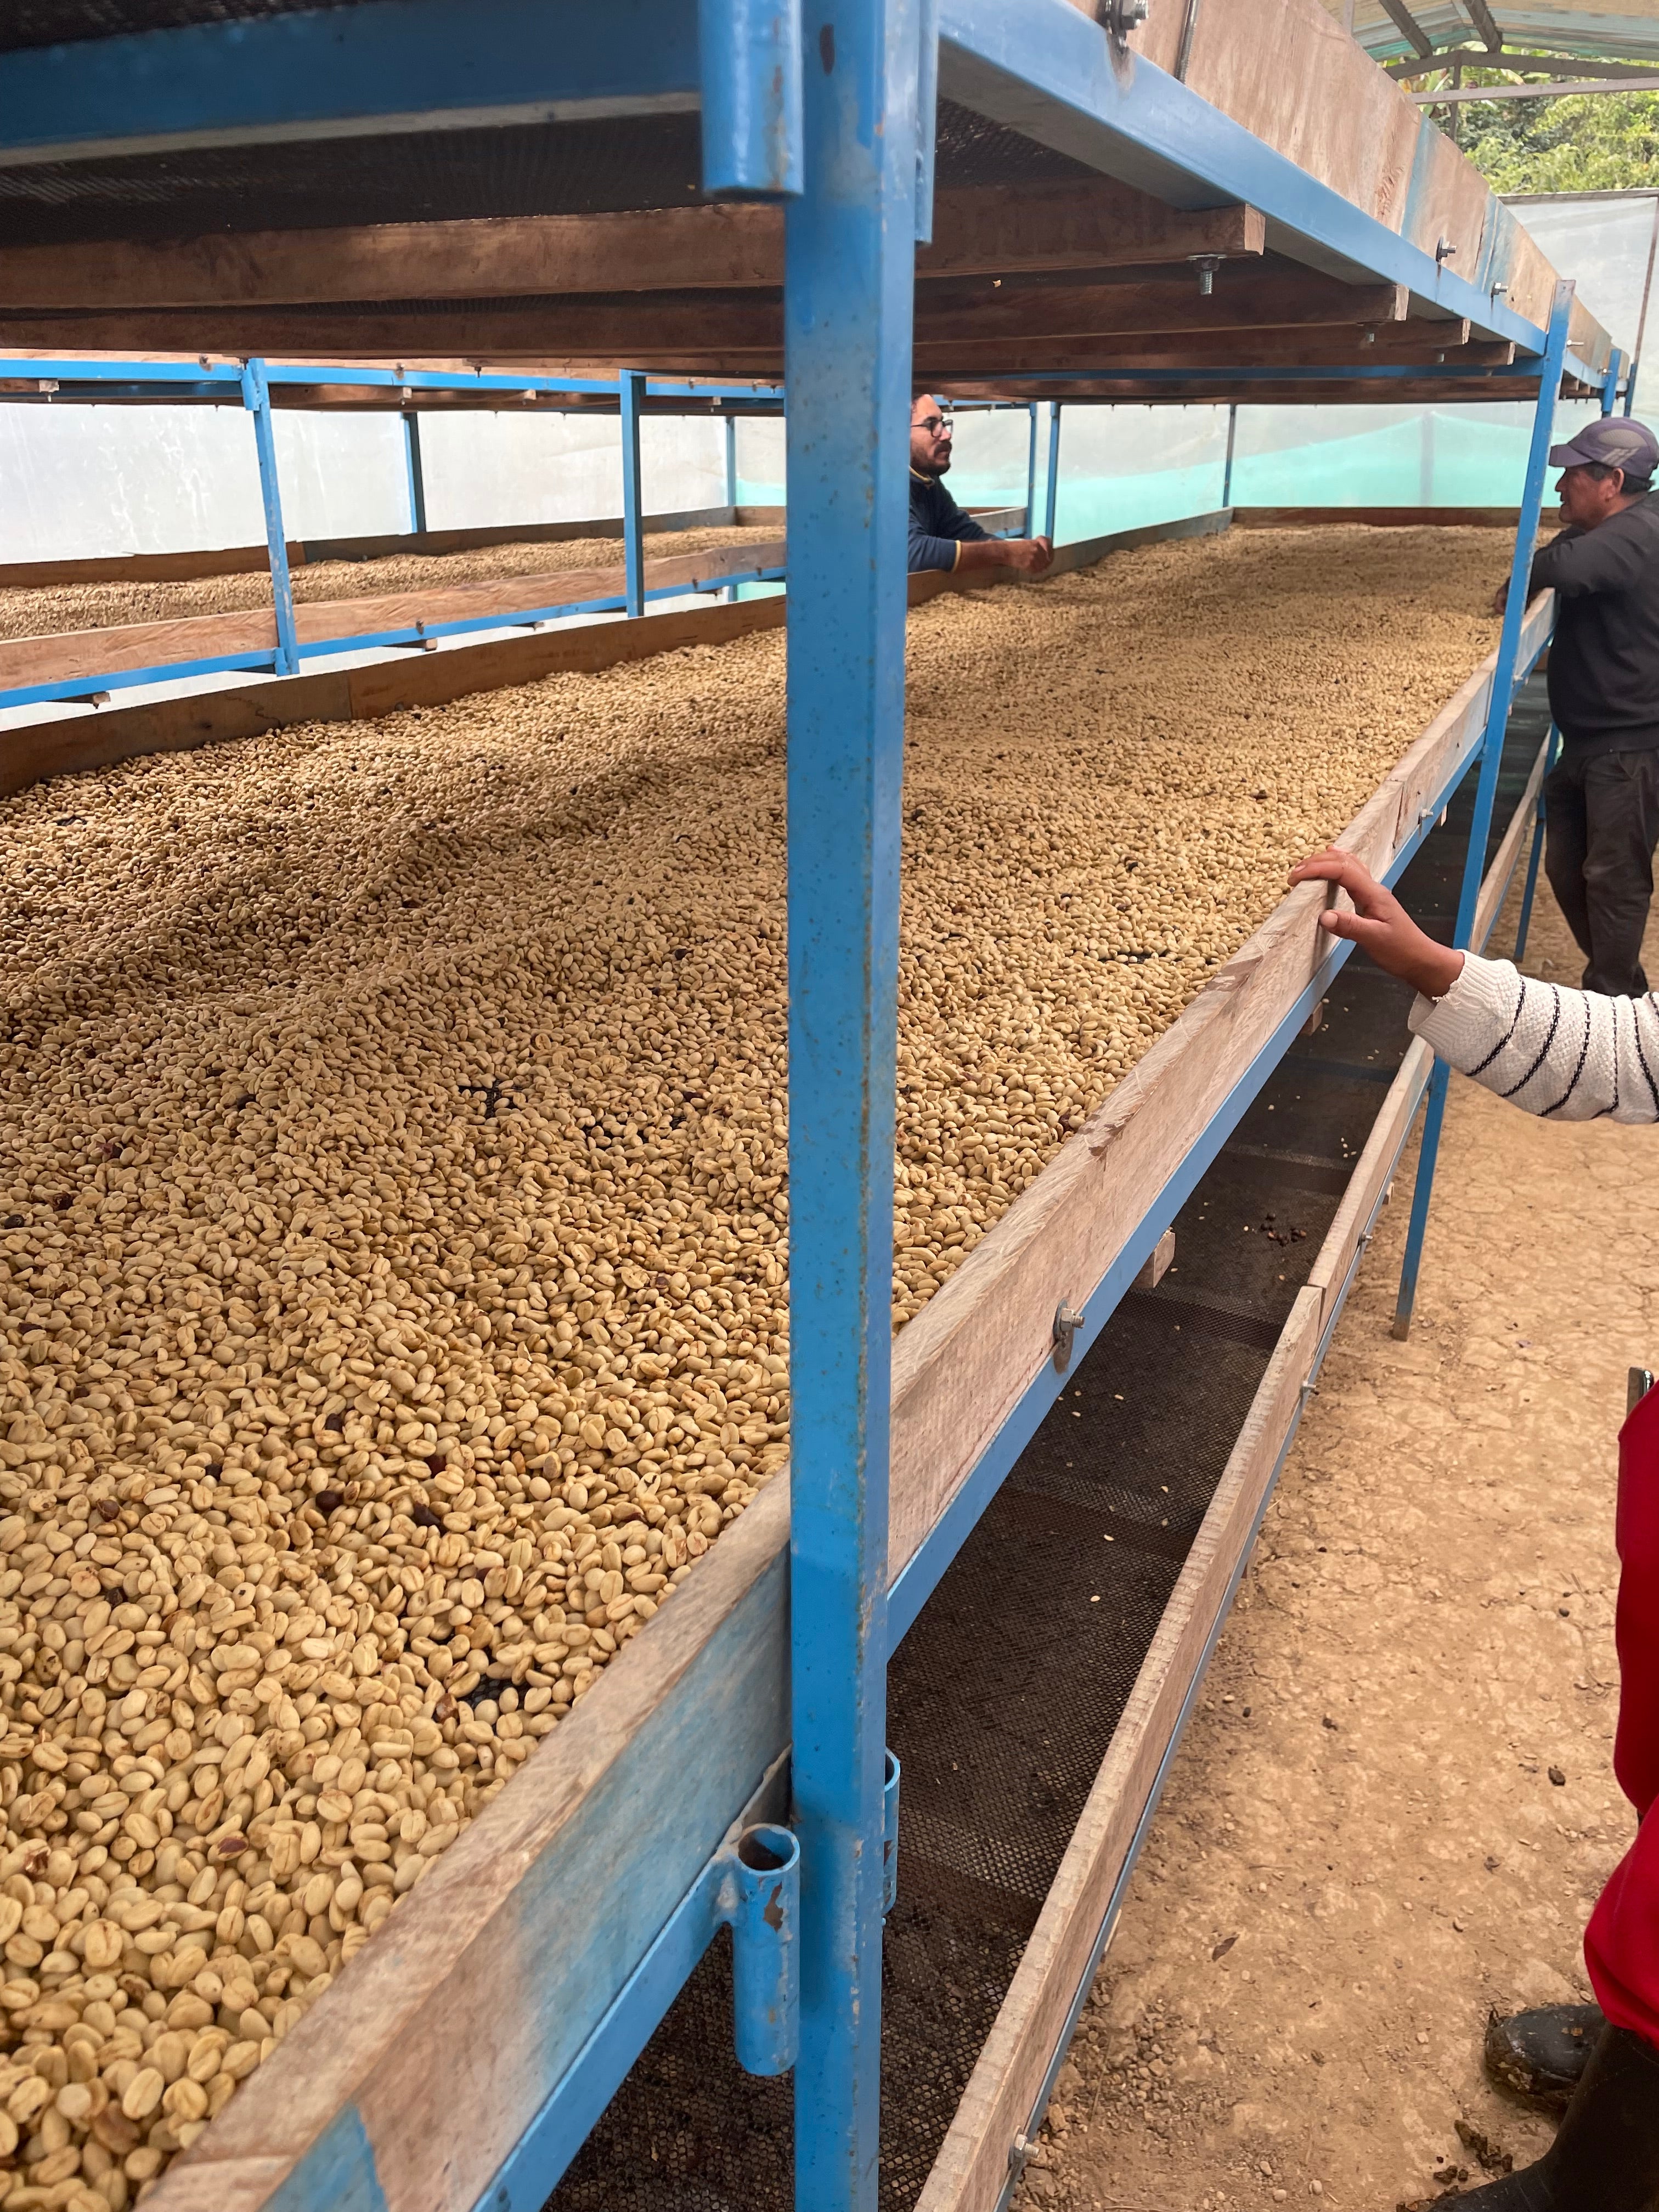 Nach dem Schälen und Waschen werden die "washed" Kaffees zum Trocknen auf Sonnenliegen gelegt. Toccto Spezialitätenkaffee, Peru.